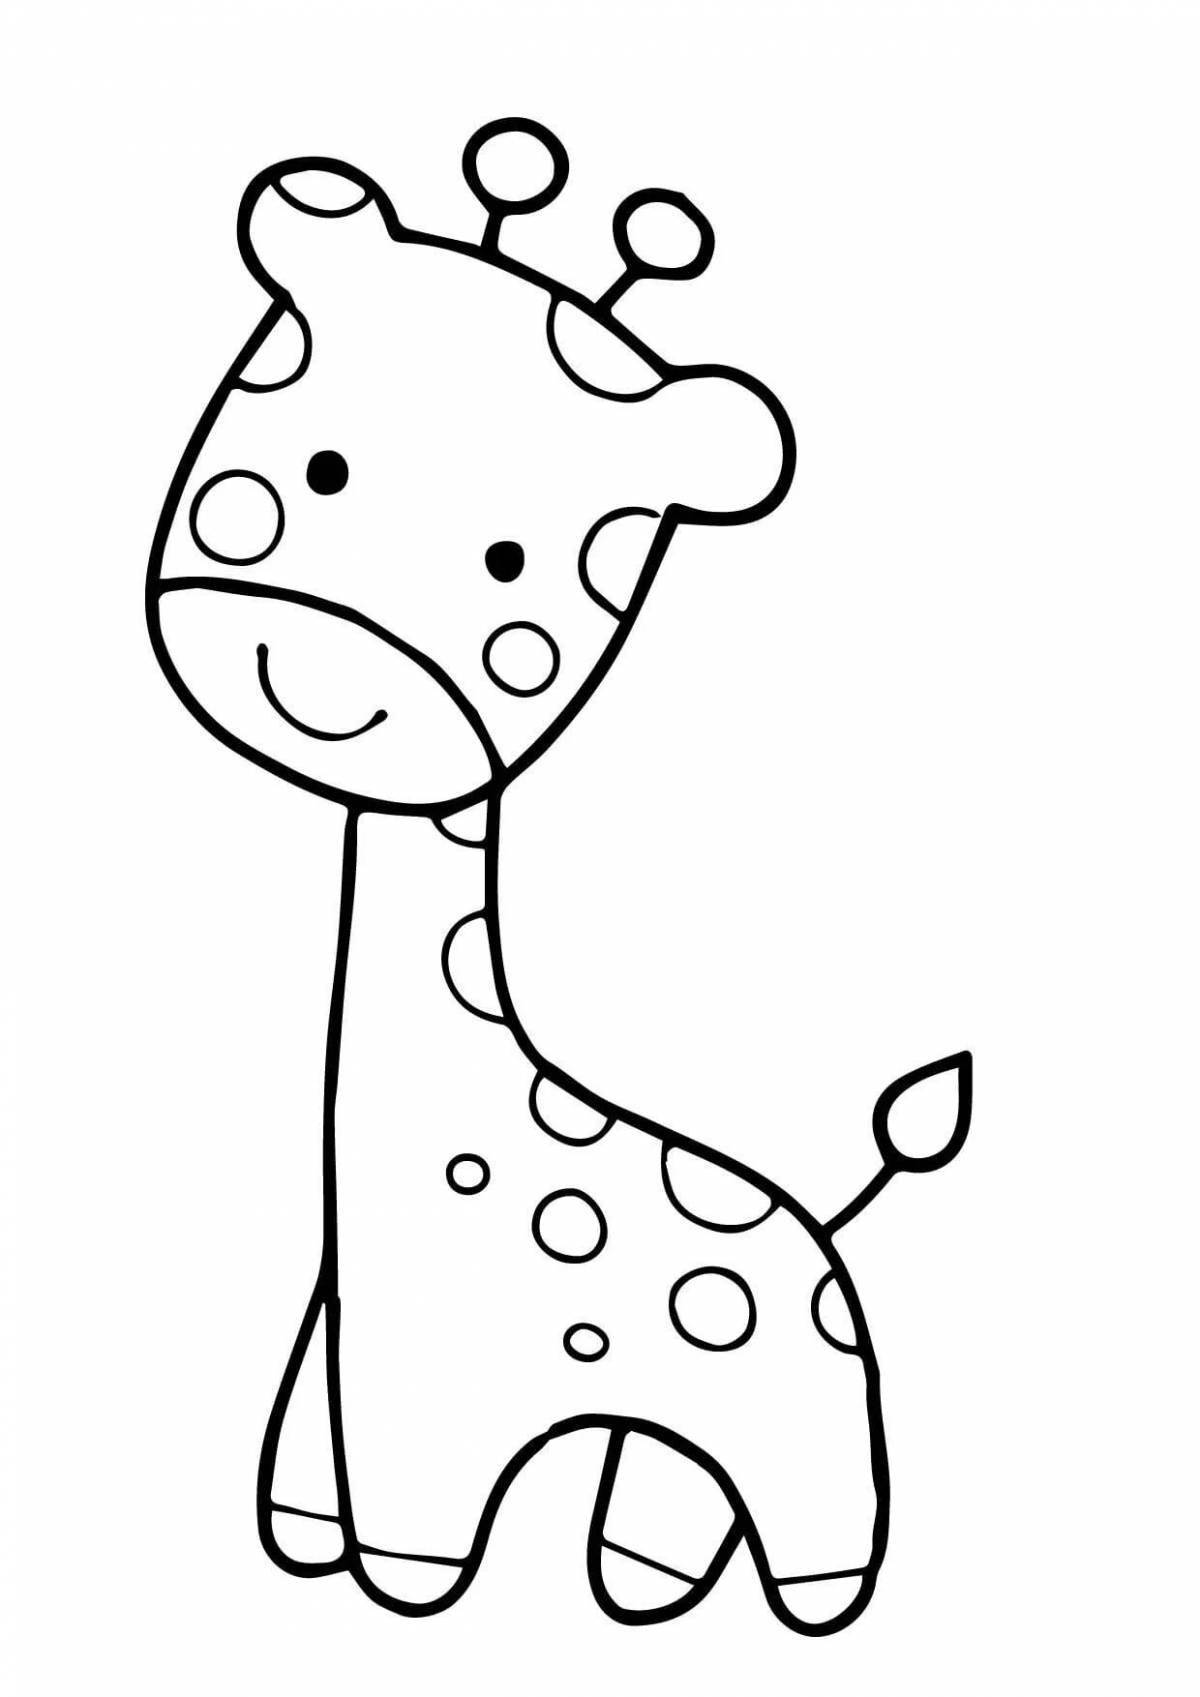 Adorable animal drawing for kids